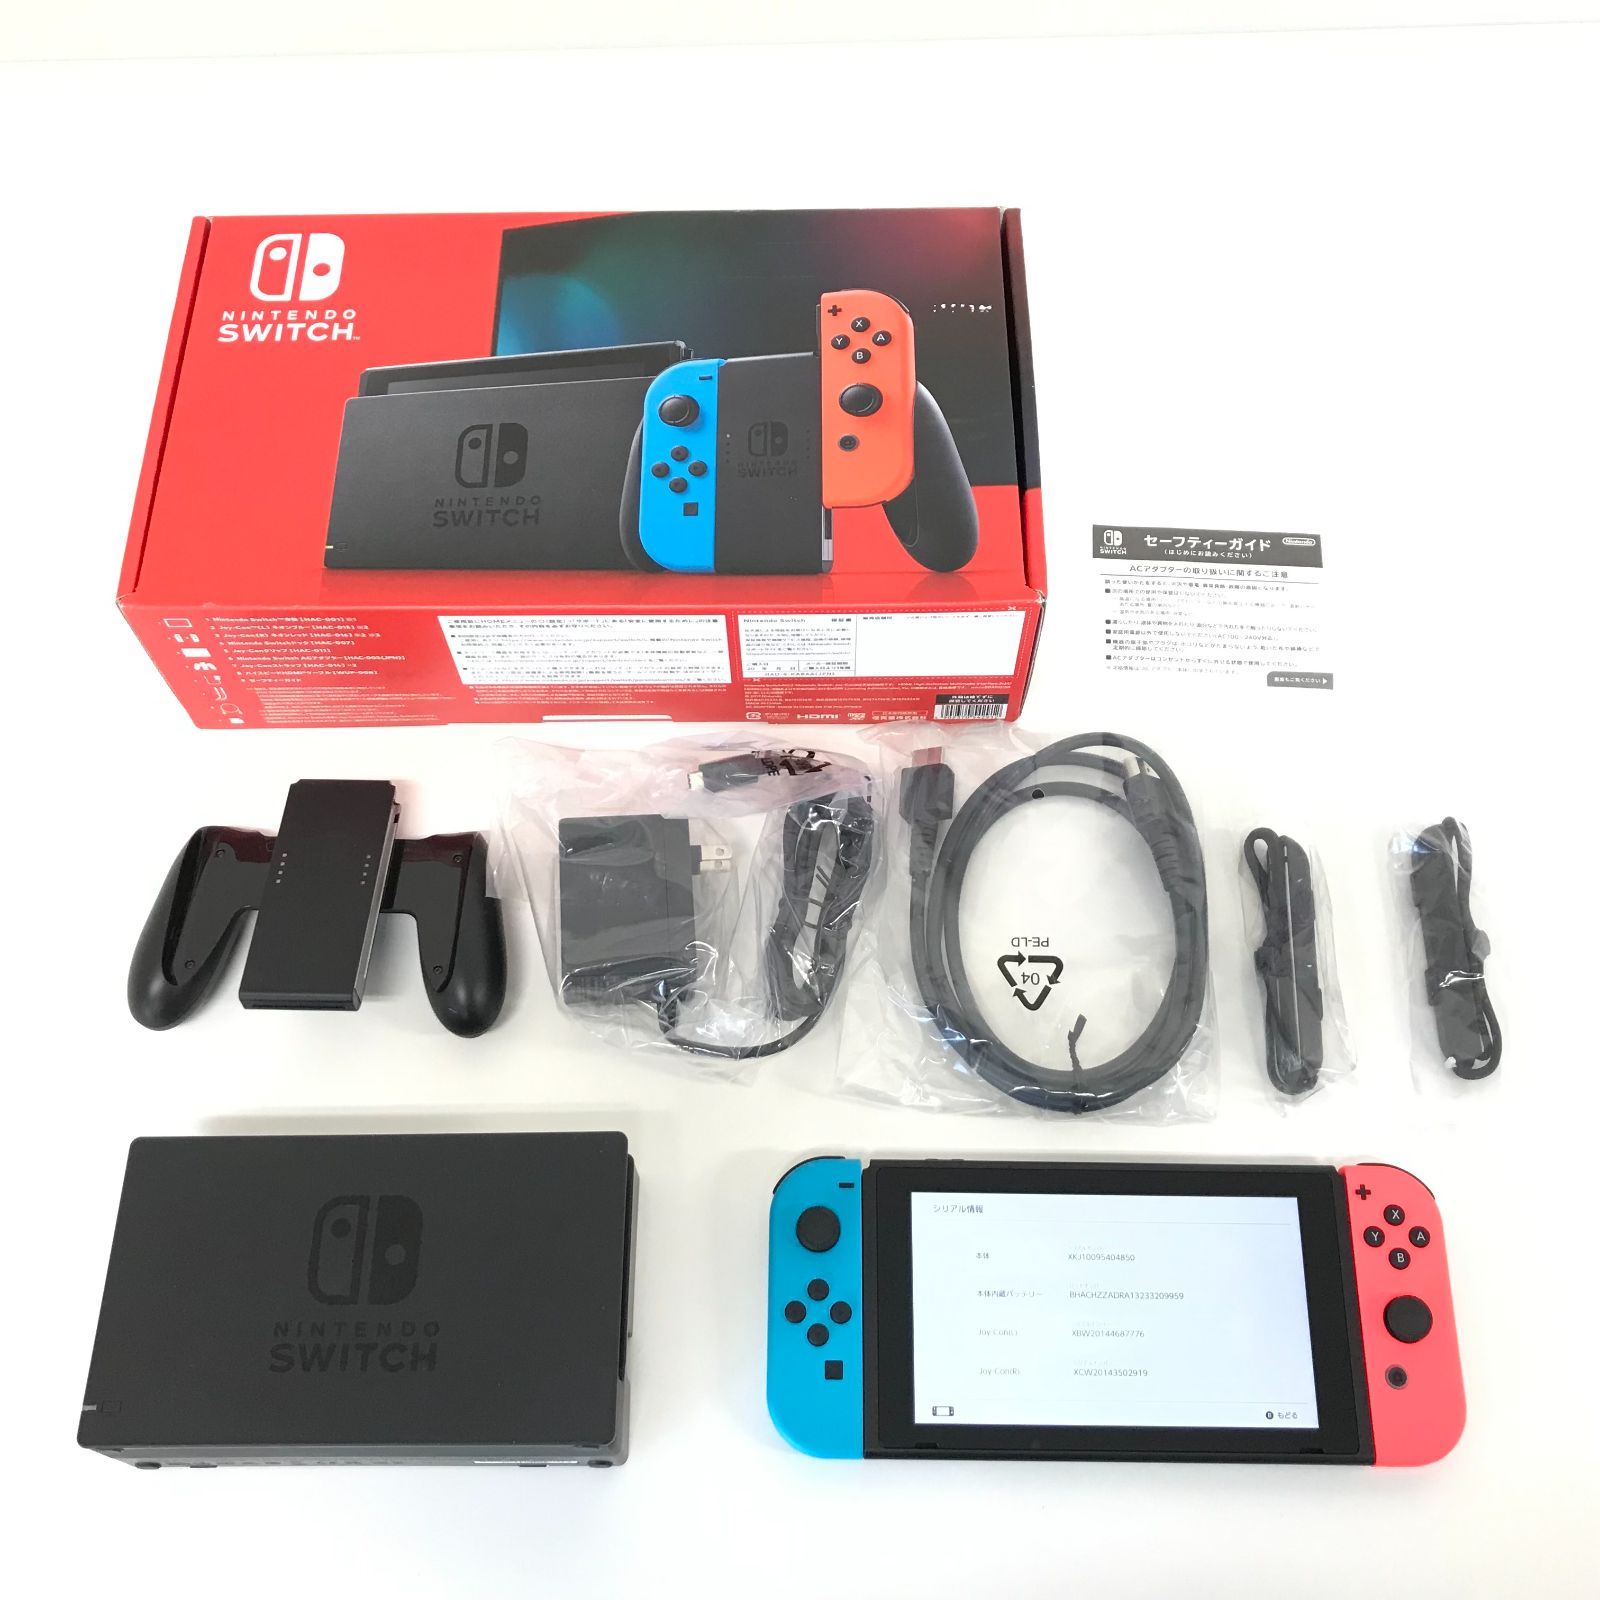 θ【未使用品】Nintendo Switch 新型 ネオンブルー/ネオンレッド - メルカリ